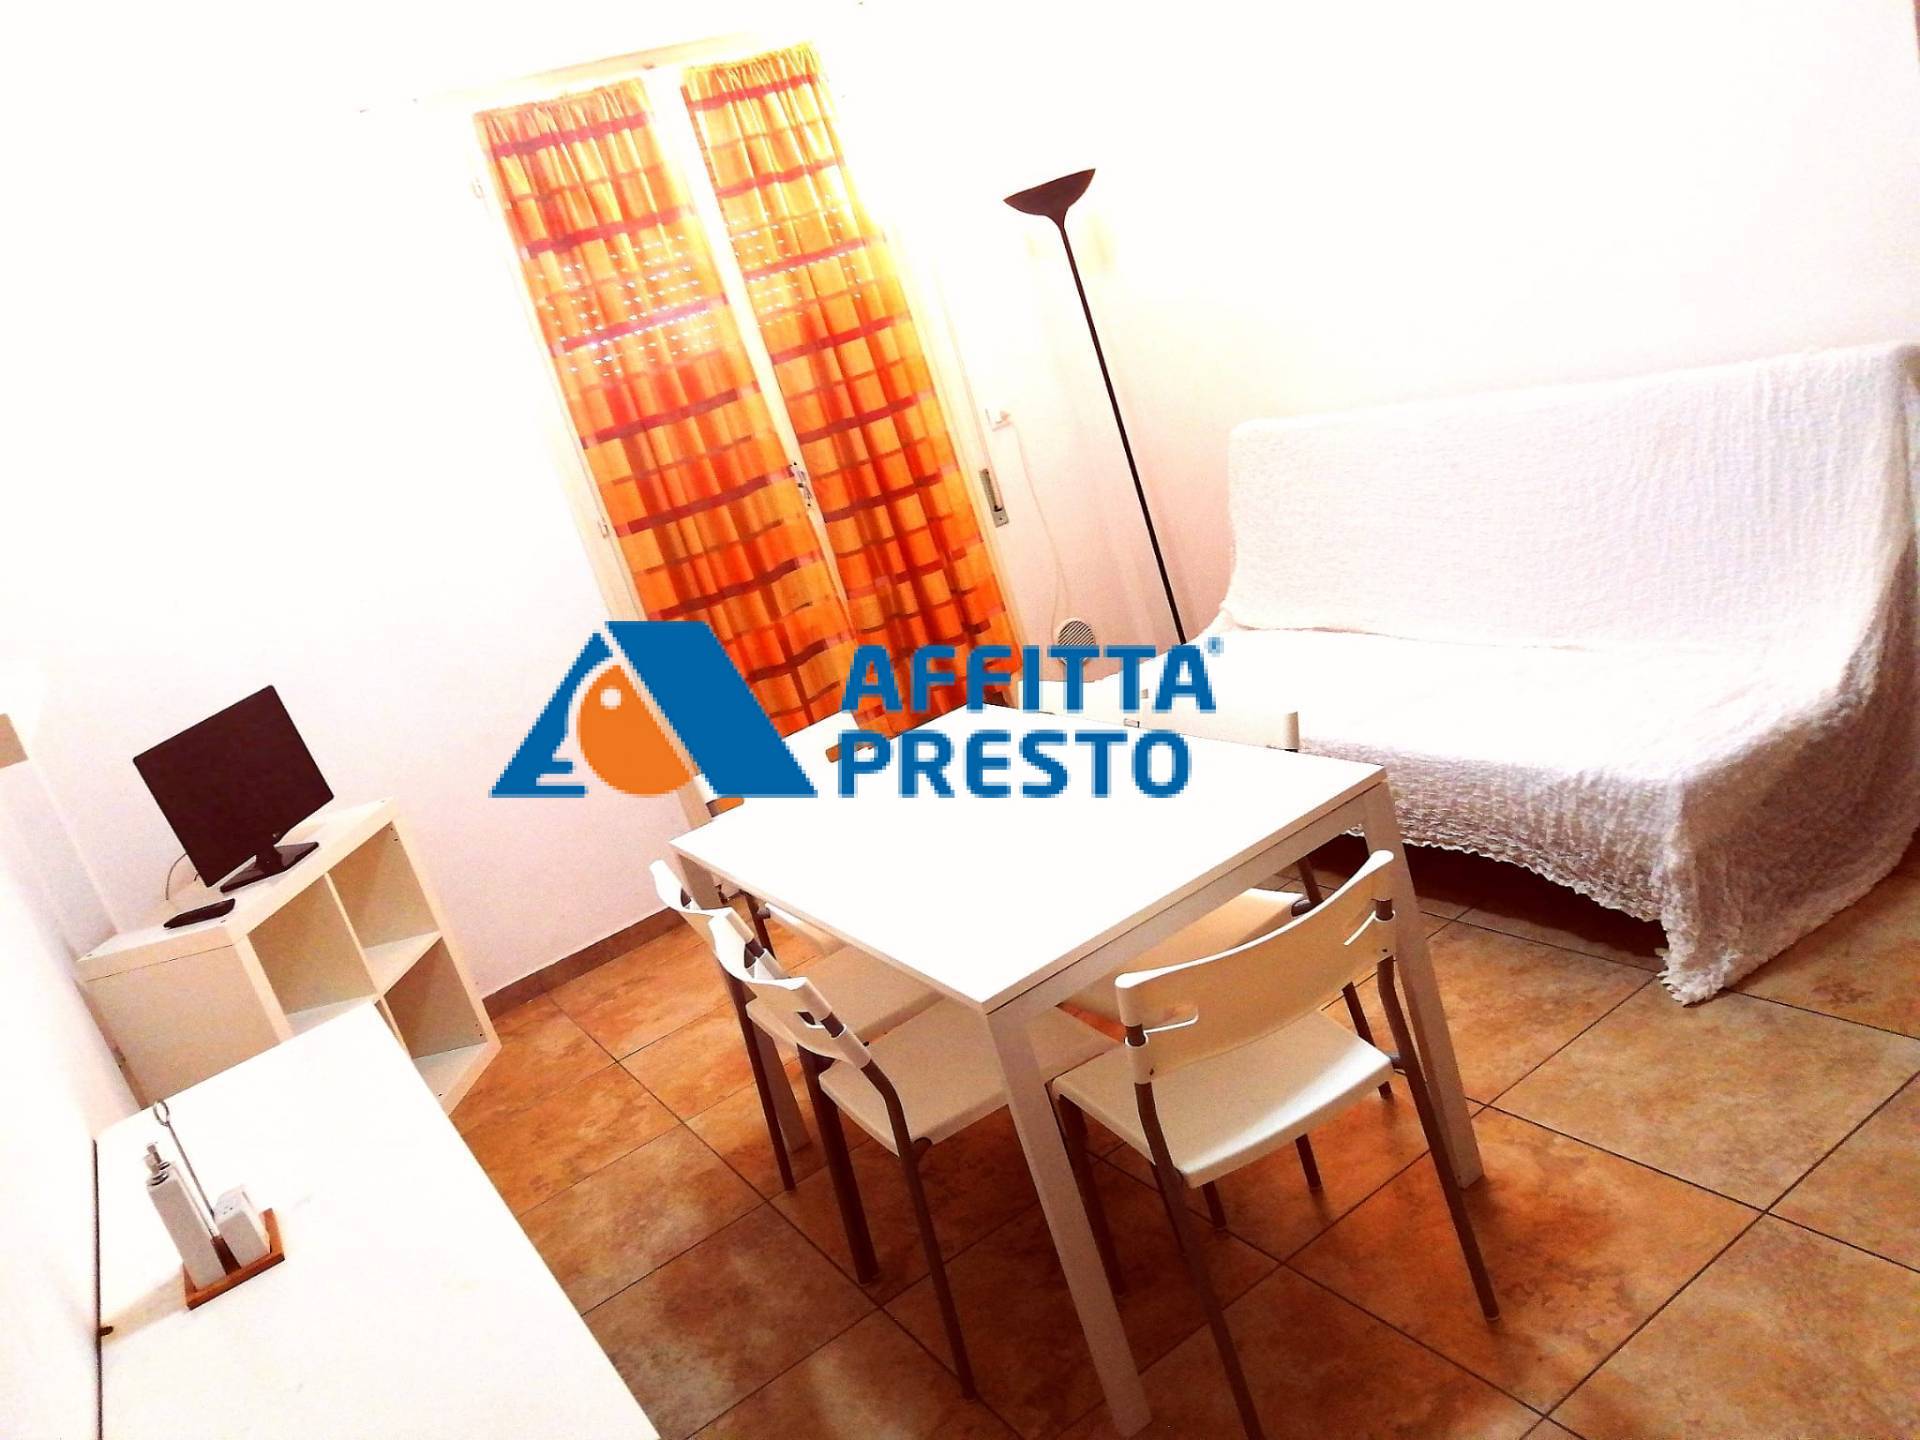 Appartamento in affitto a Cesenatico, 2 locali, zona Località: Cesenatico, prezzo € 5.500 | CambioCasa.it